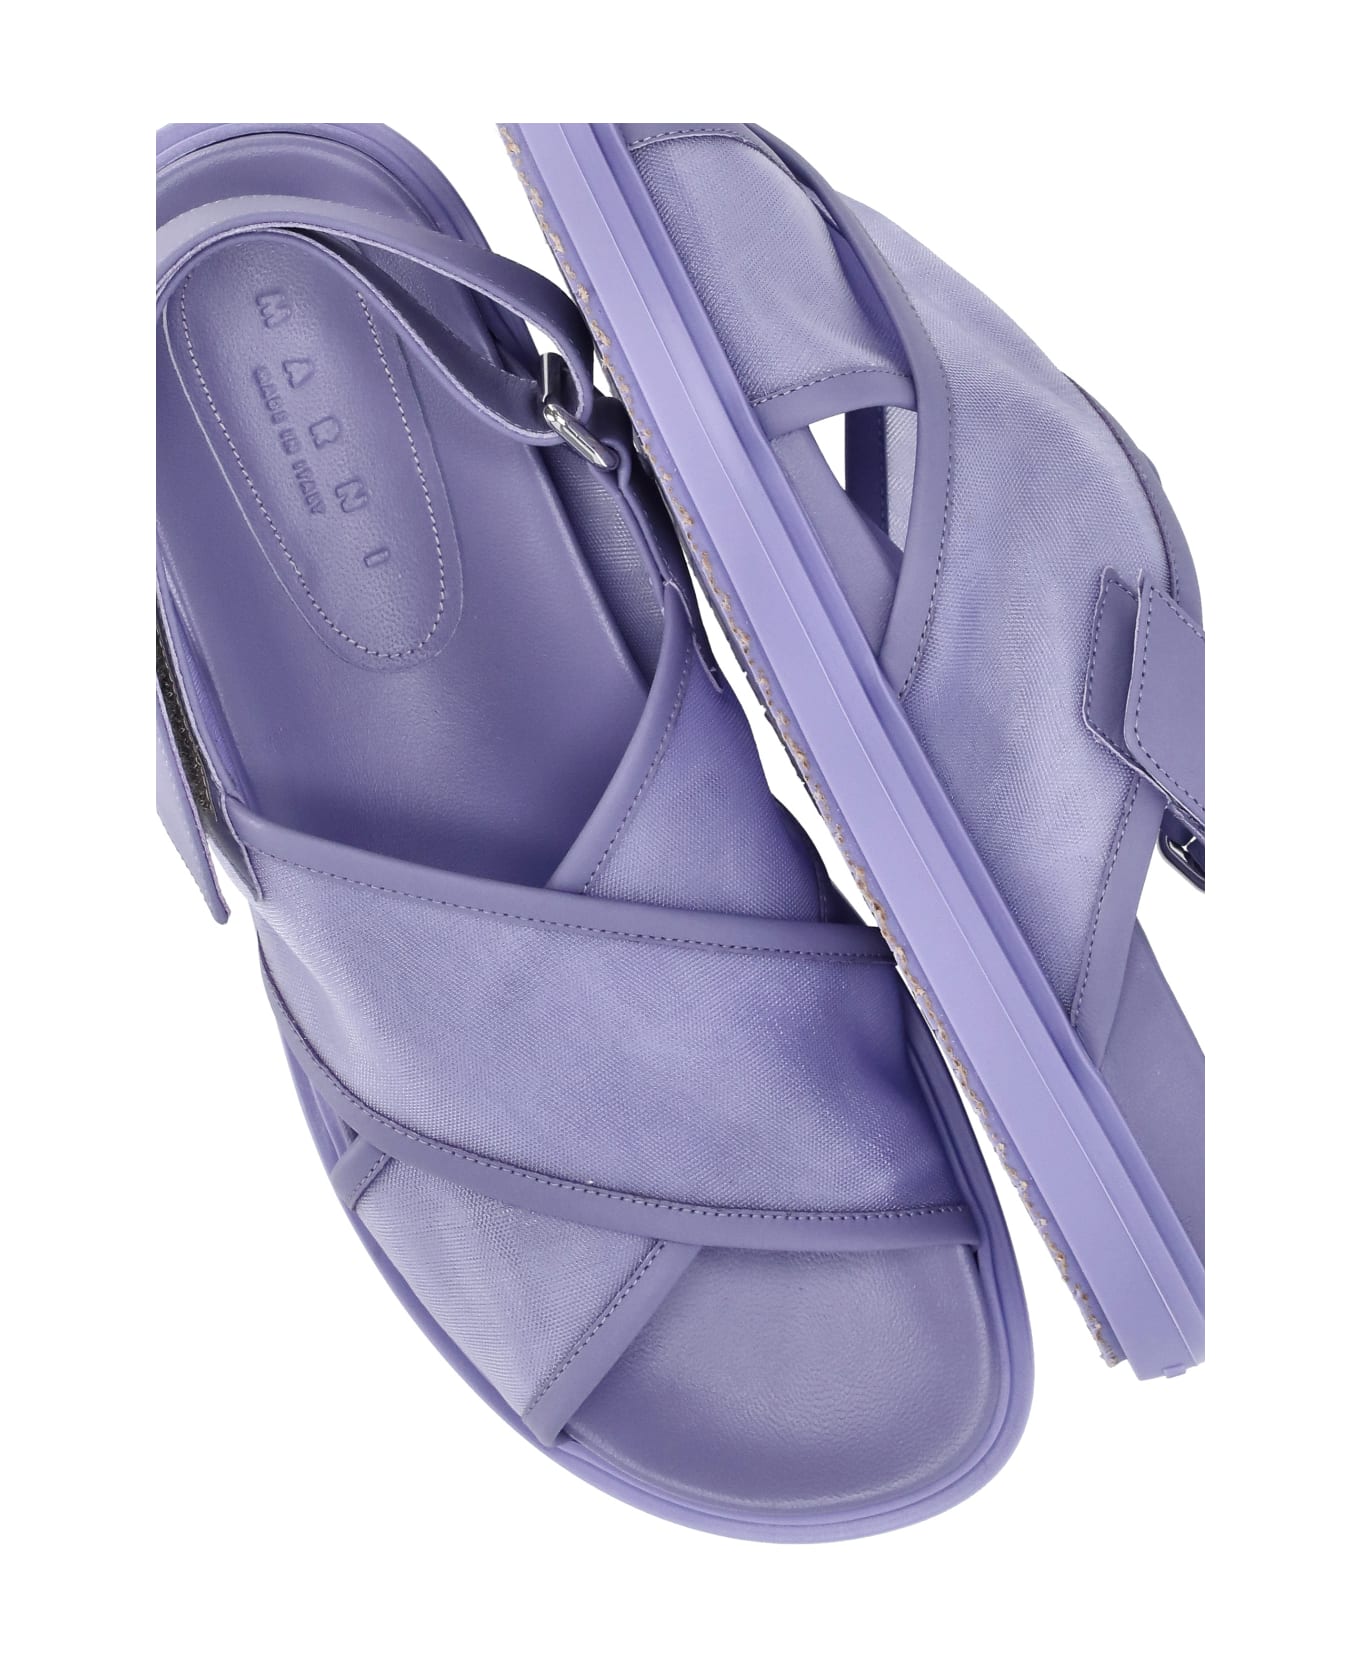 Marni Logoed Sandals - Purple フラットシューズ